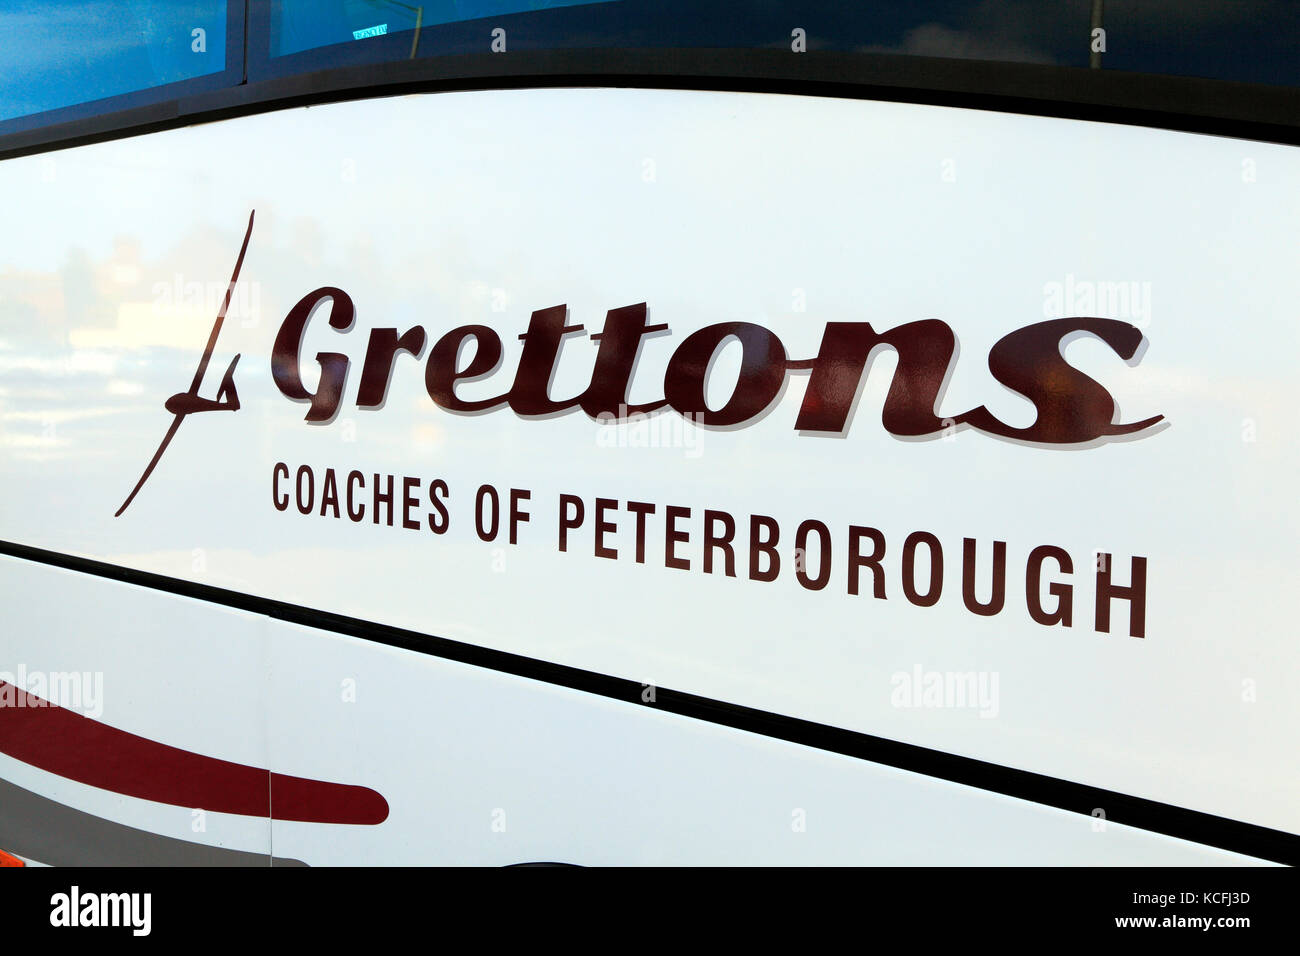 Grettons Trainer, von Peterborough, Trainer, Tagesausflüge, Ausflug, Ausflüge, Ausflug, Urlaub, Ferien, Reisen, Unternehmen, Unternehmen, Verkehr, Bus Stockfoto